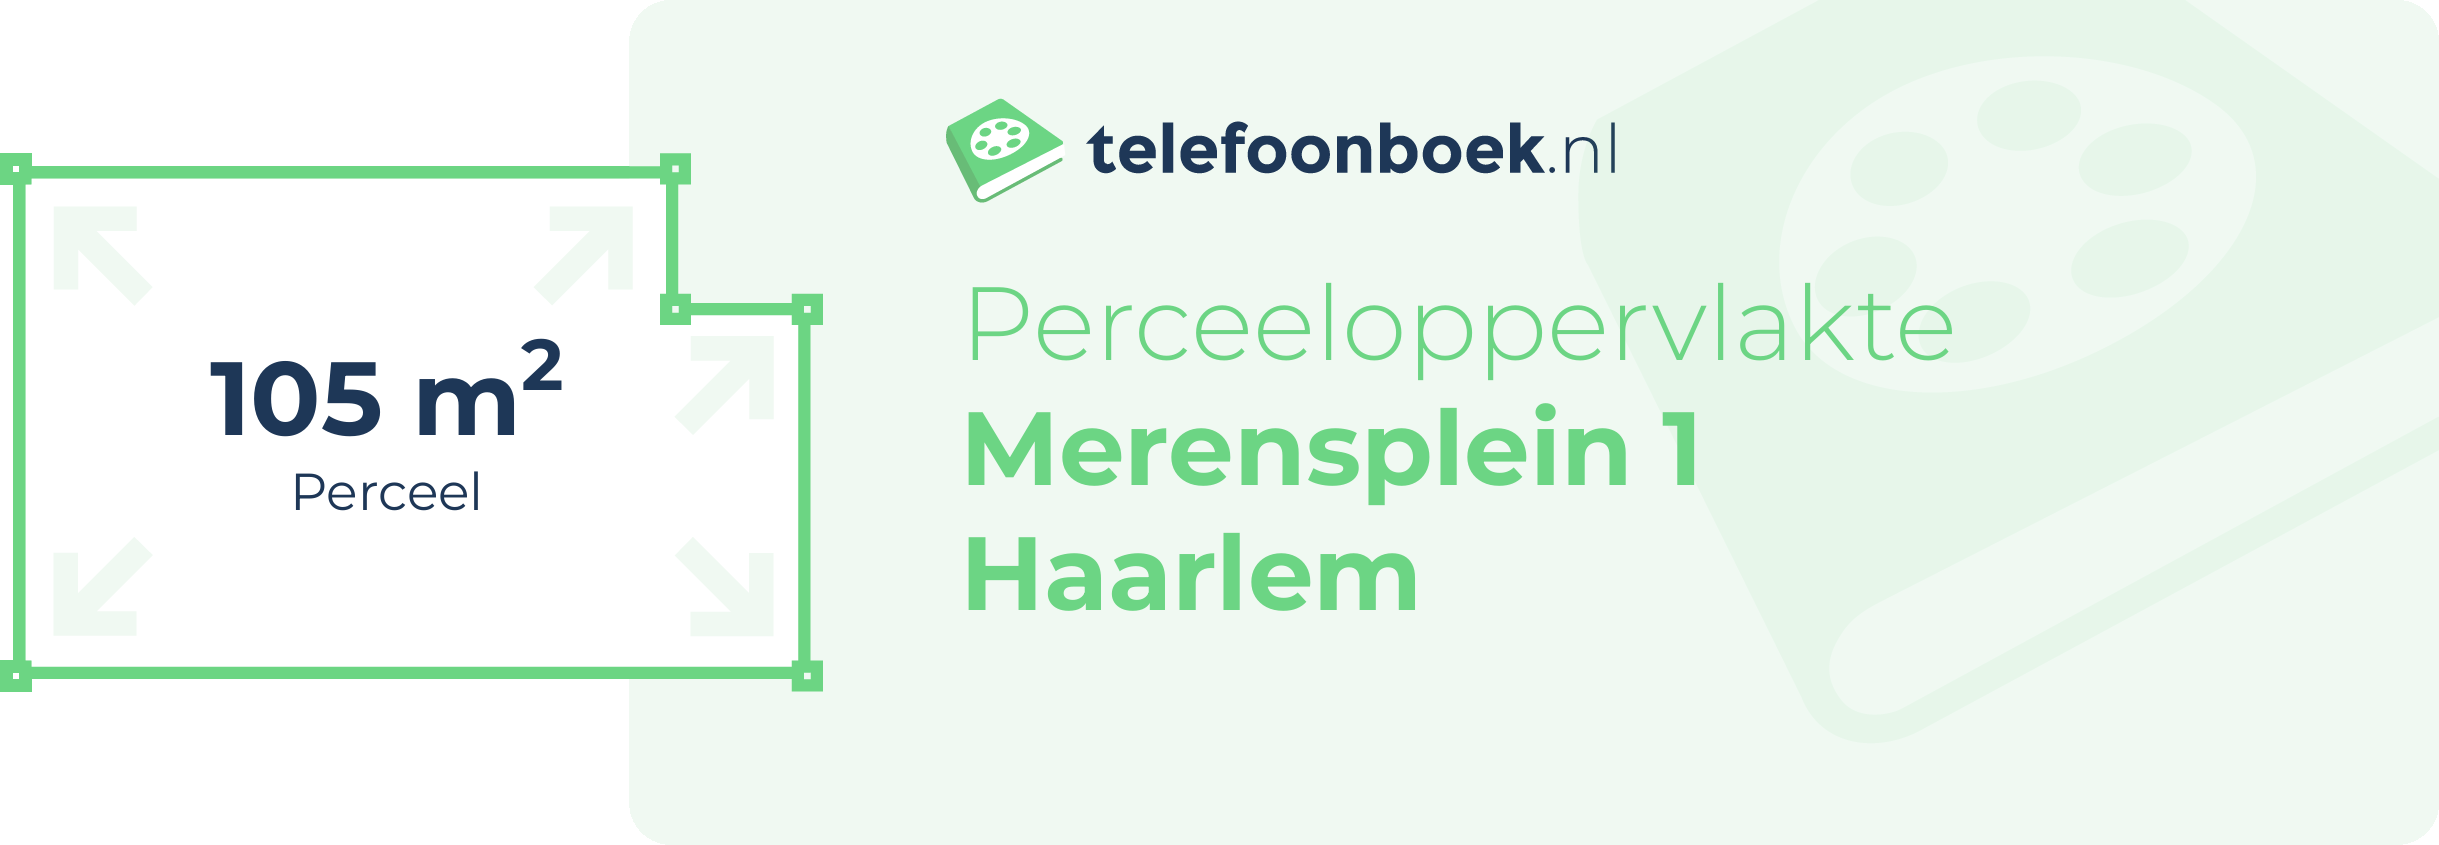 Perceeloppervlakte Merensplein 1 Haarlem